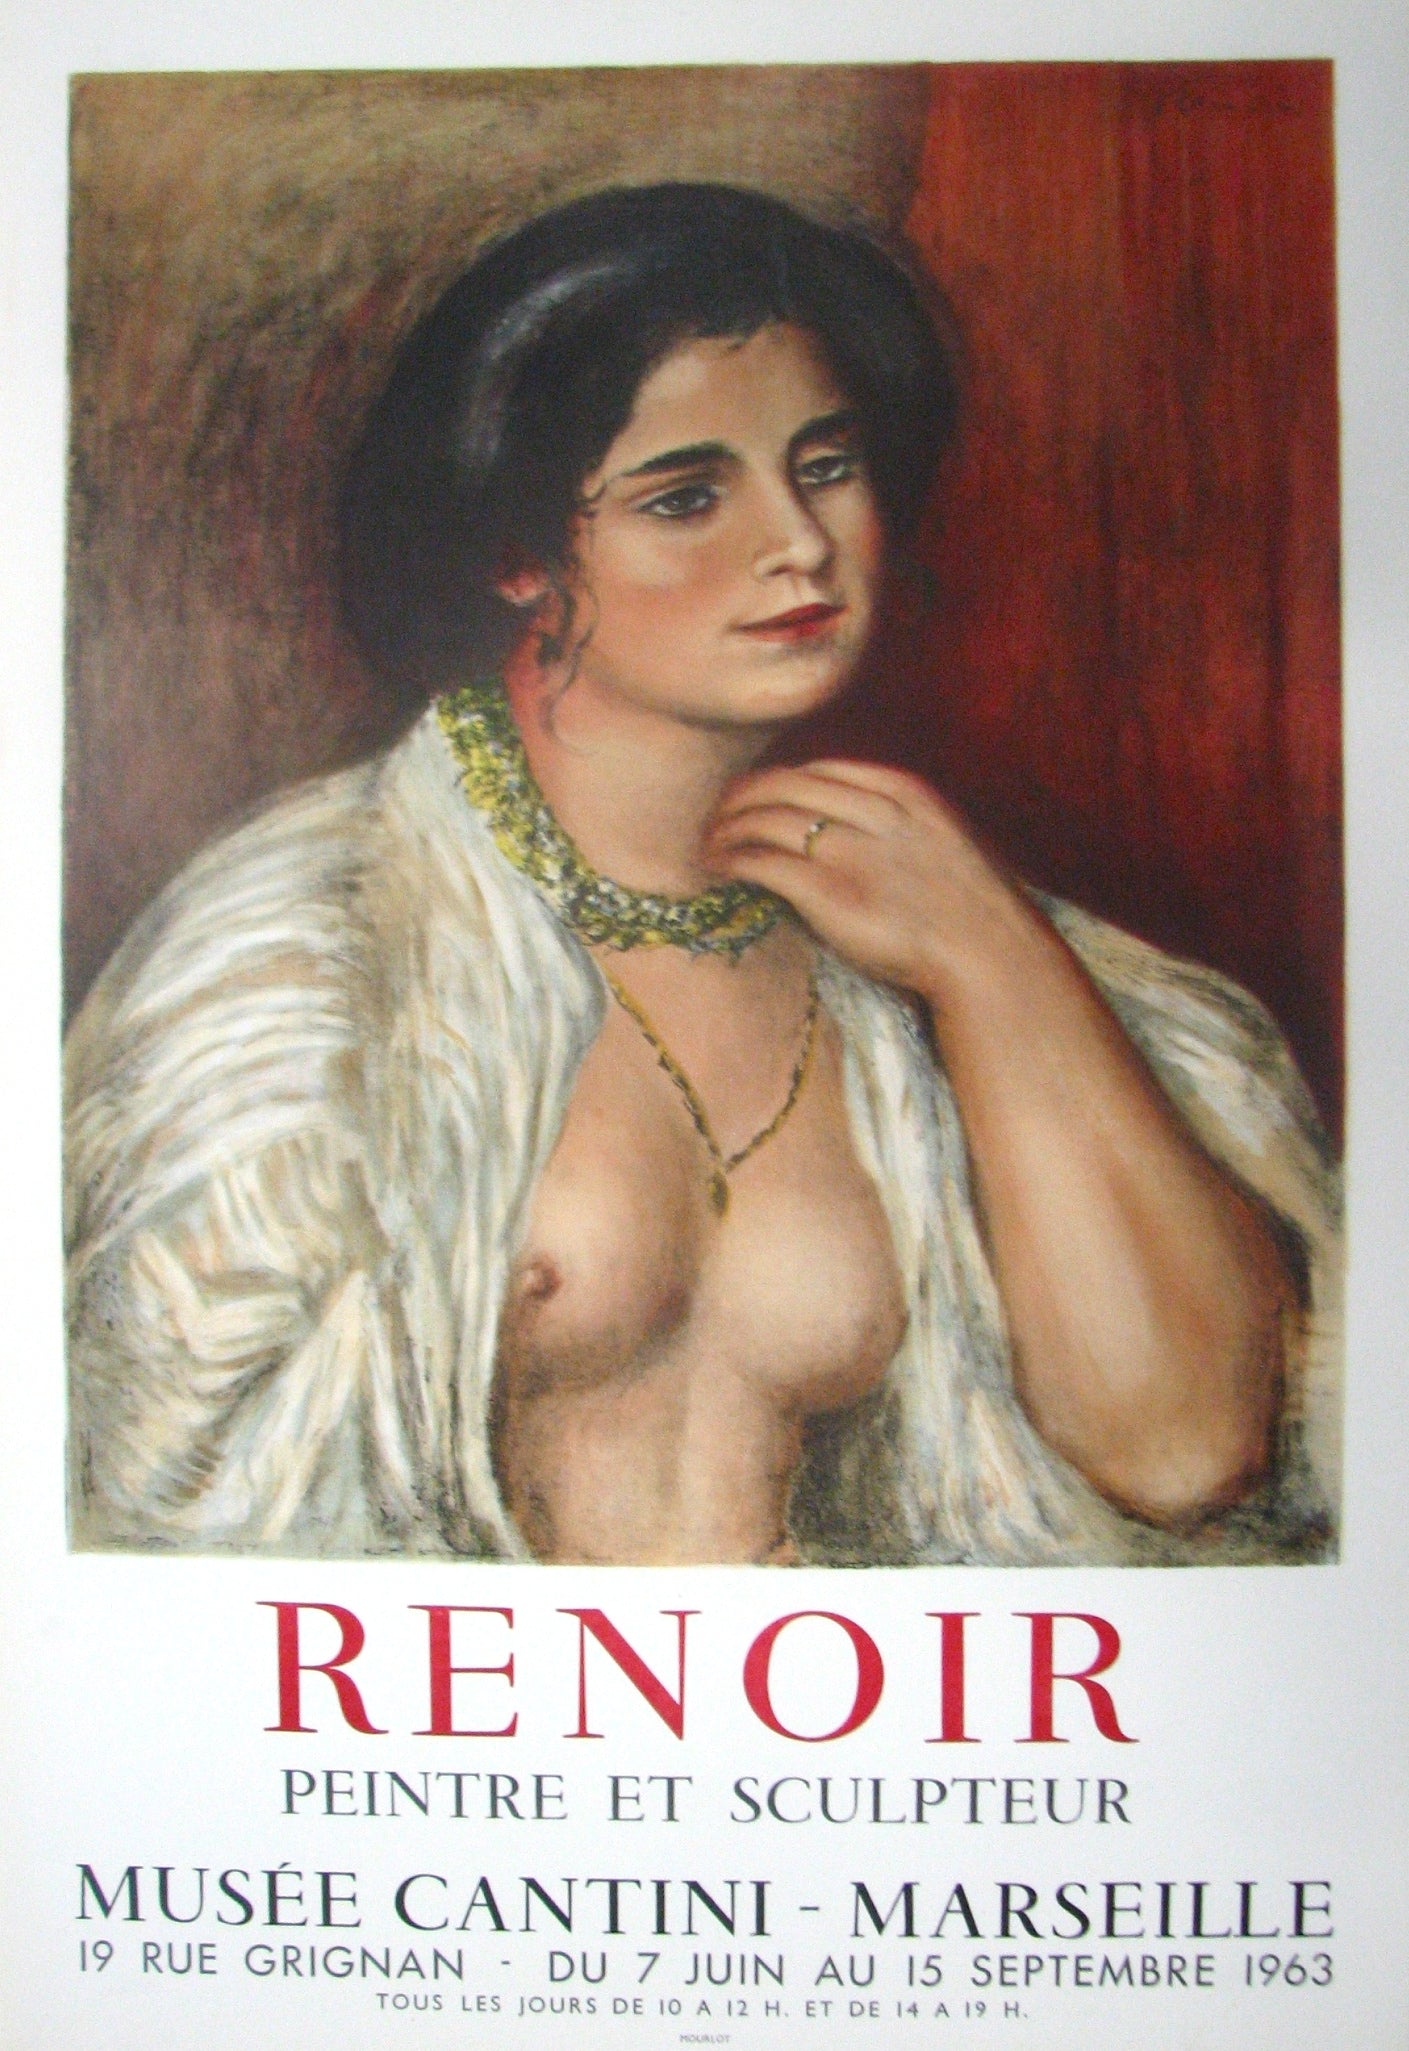 Musée Cantini-Marseille (after) Pierre Auguste Renoir, 1963 - Mourlot Editions - Fine_Art - Poster - Lithograph - Wall Art - Vintage - Prints - Original